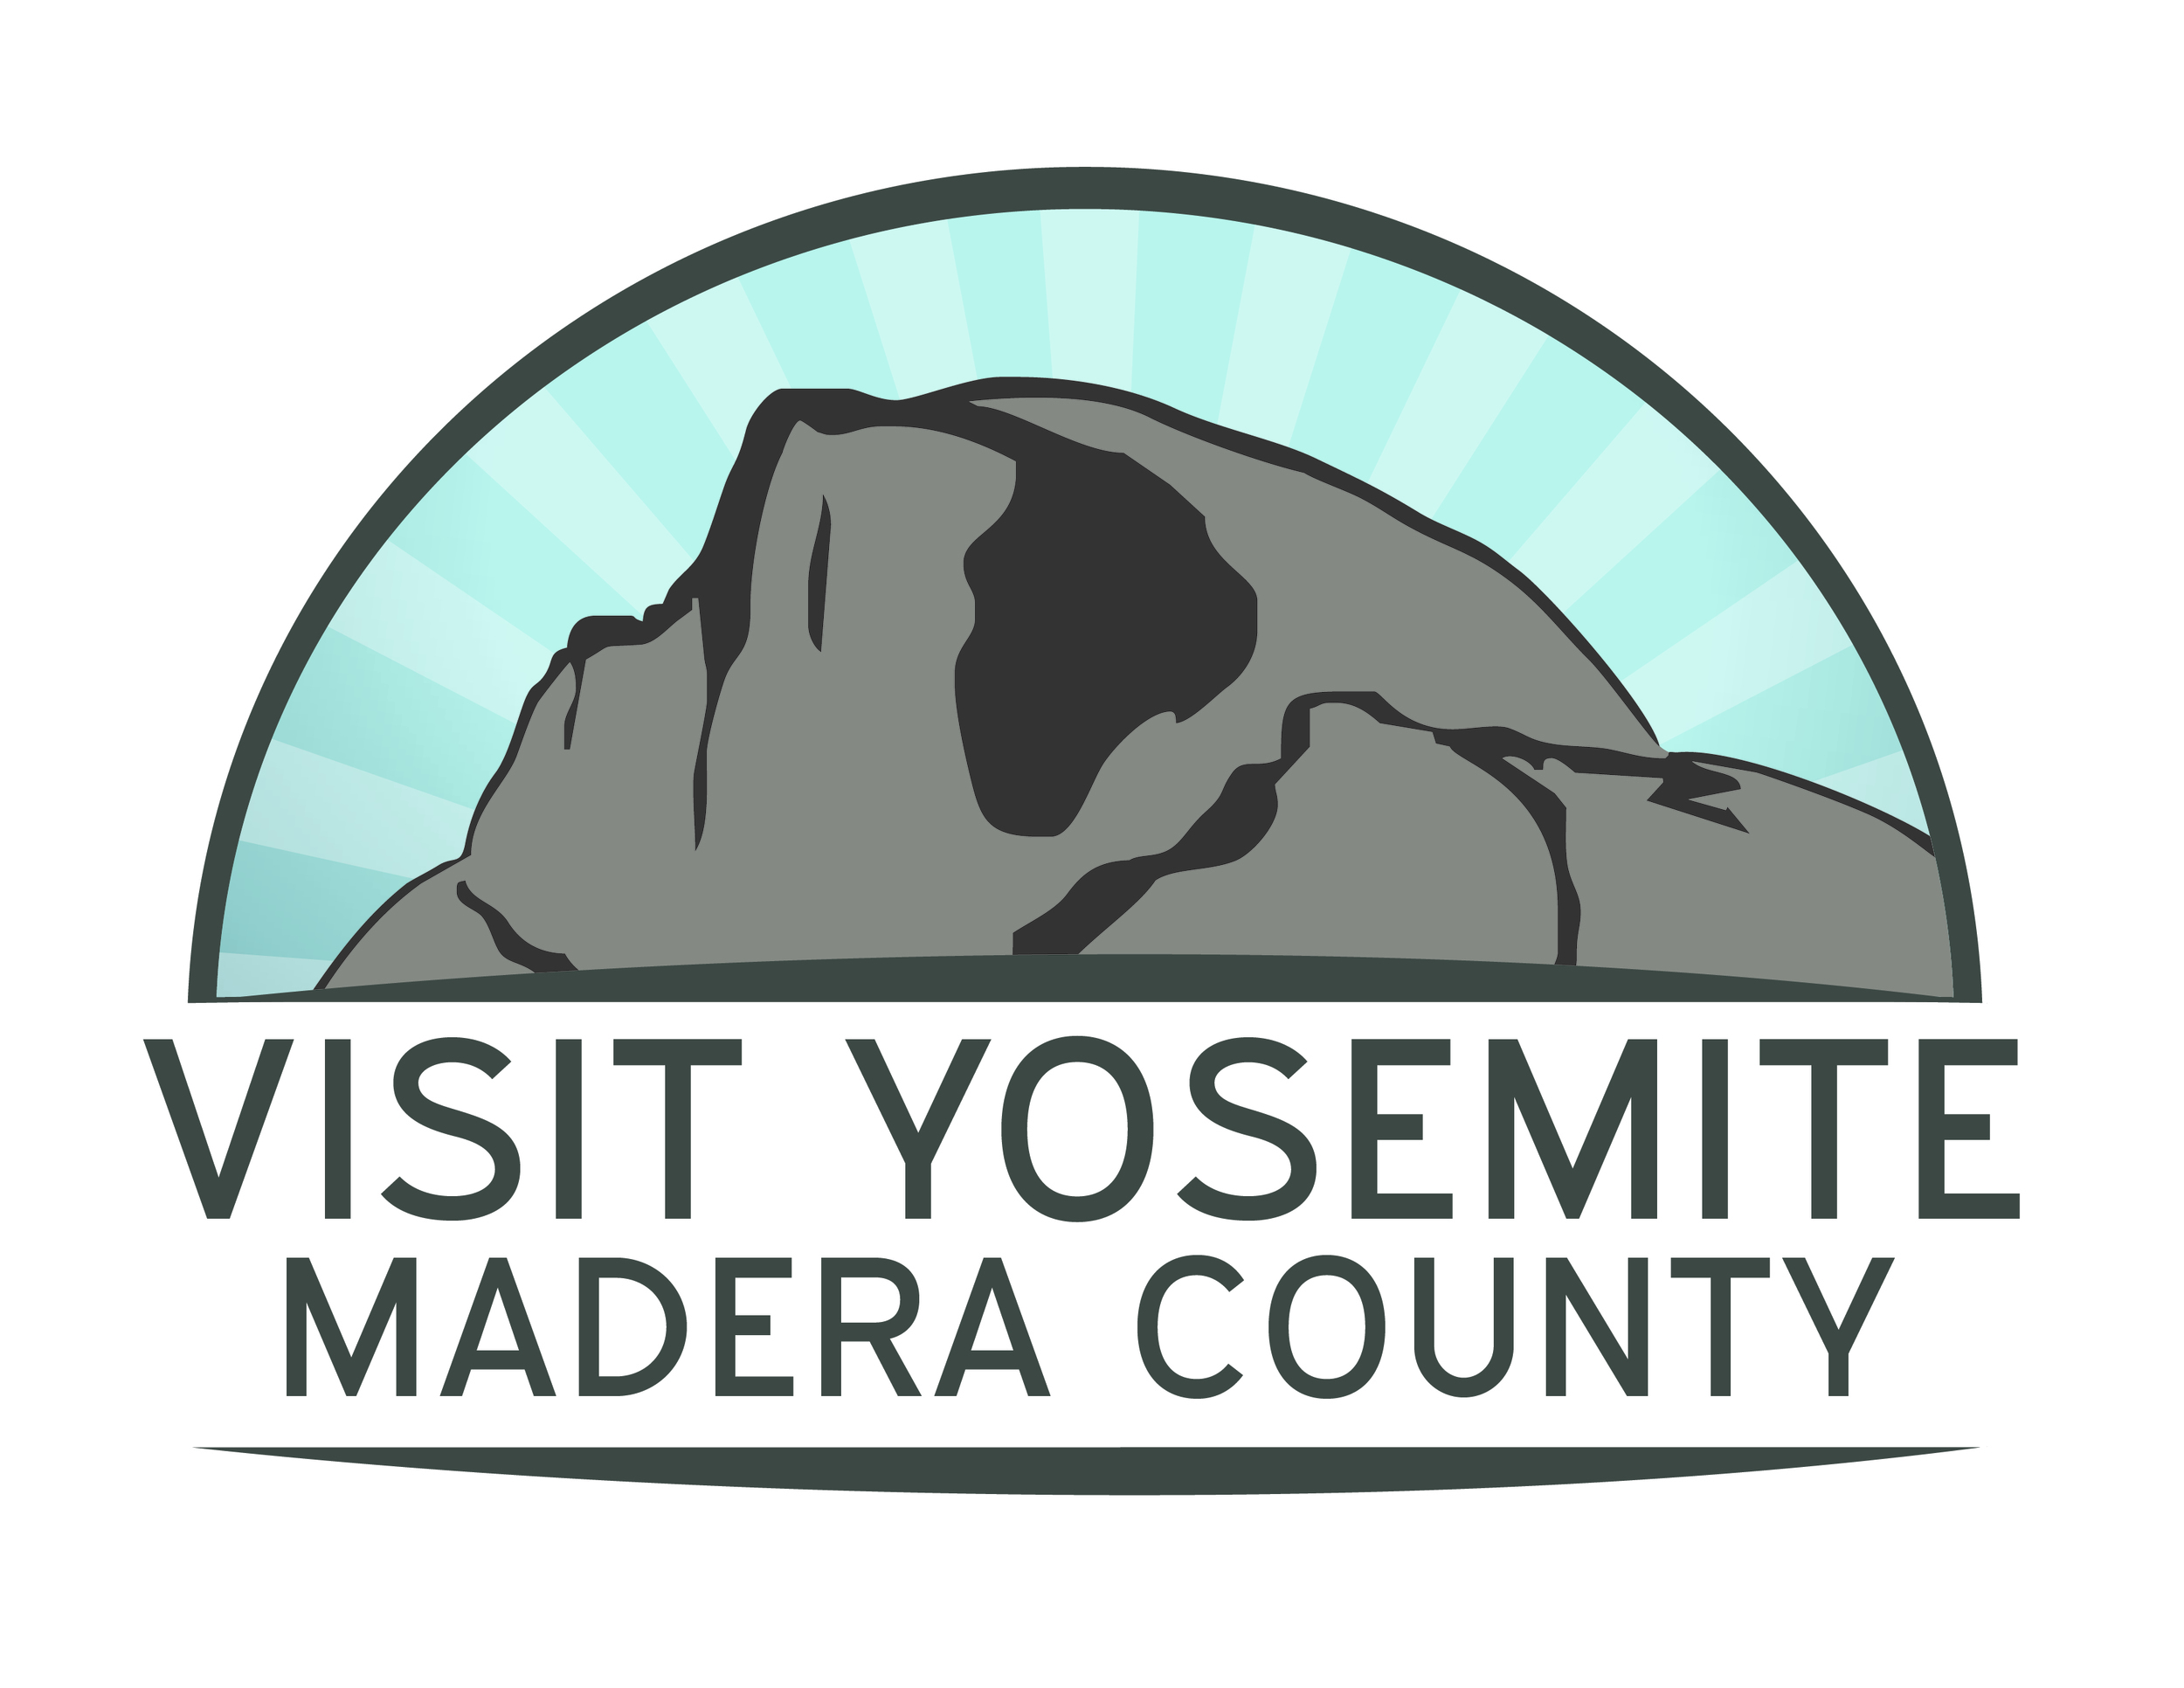 Visit Yosemite Madera County - Color CMYK.jpg